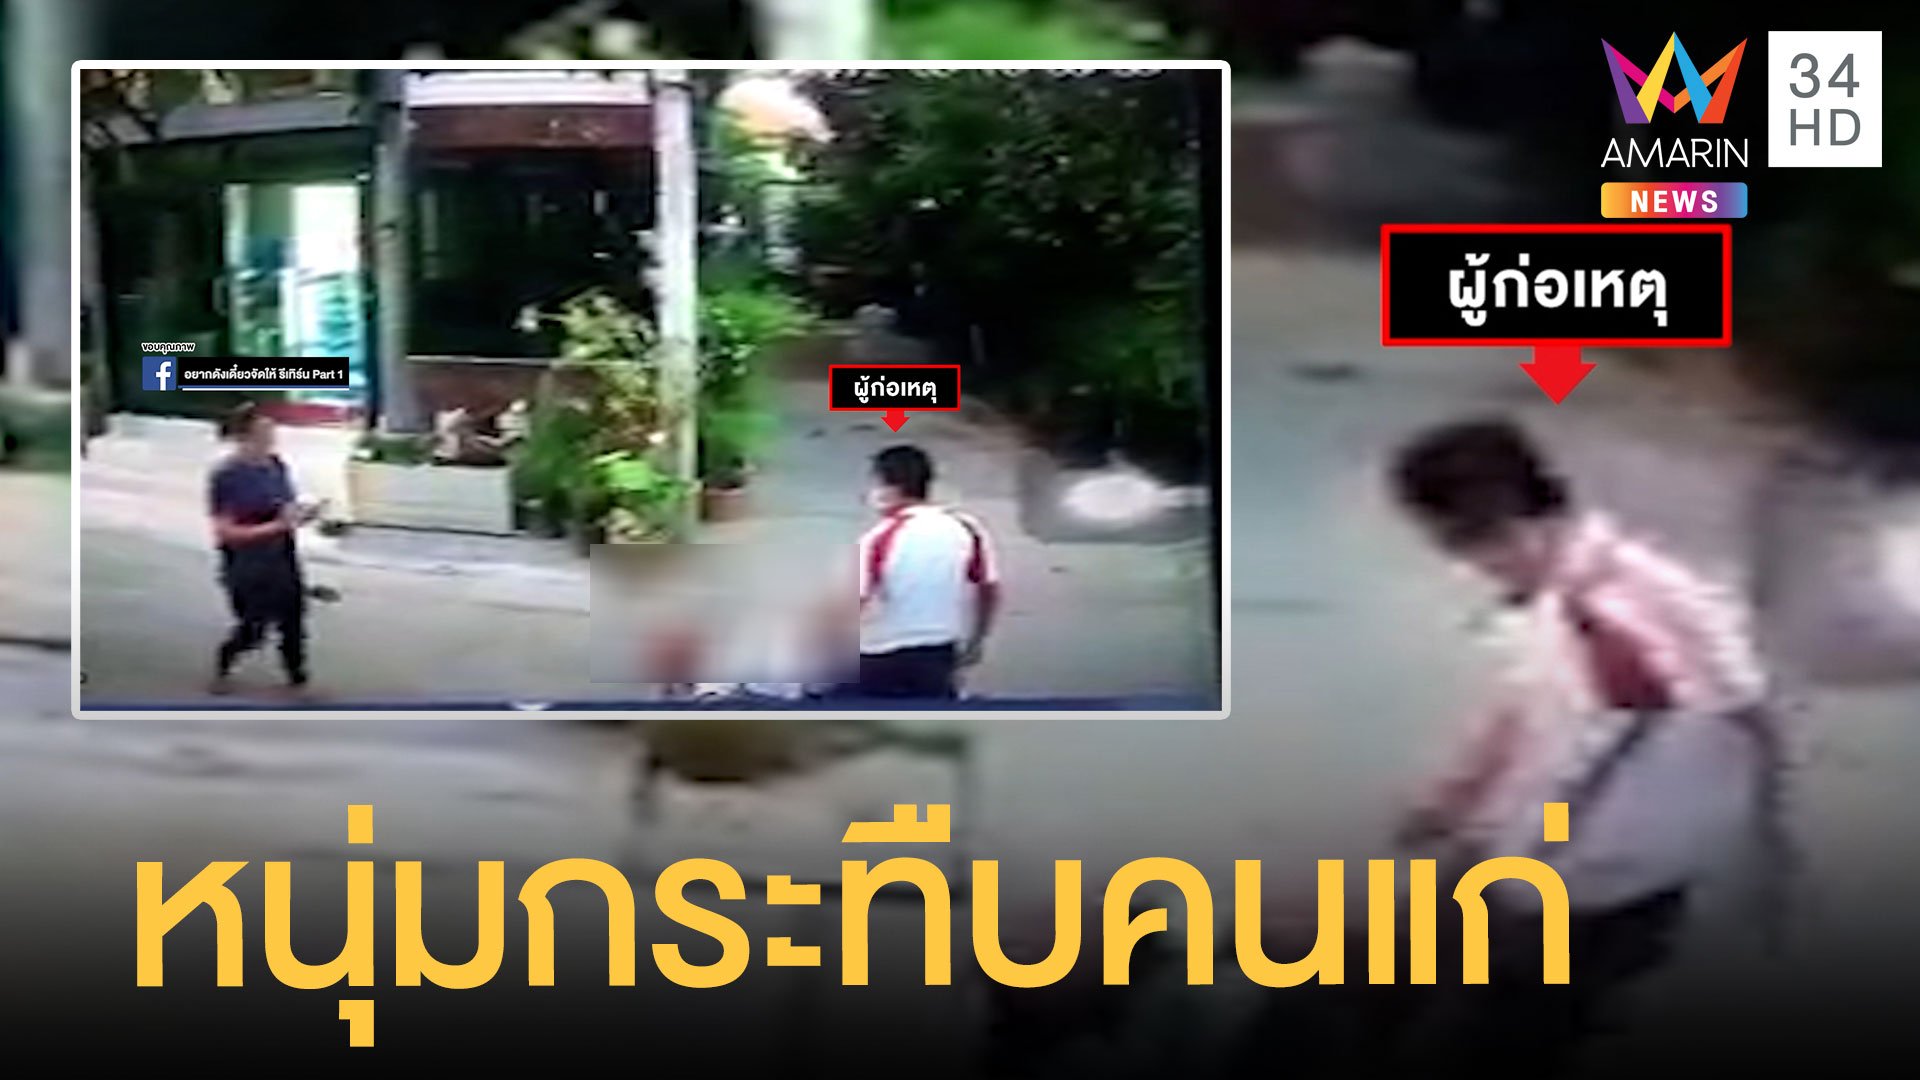 ช่ายกร่างกระทืบคนแก่ หน้าหงายสลบกลางถนน | ข่าวเที่ยงอมรินทร์ | 10 ธ.ค. 64 | AMARIN TVHD34